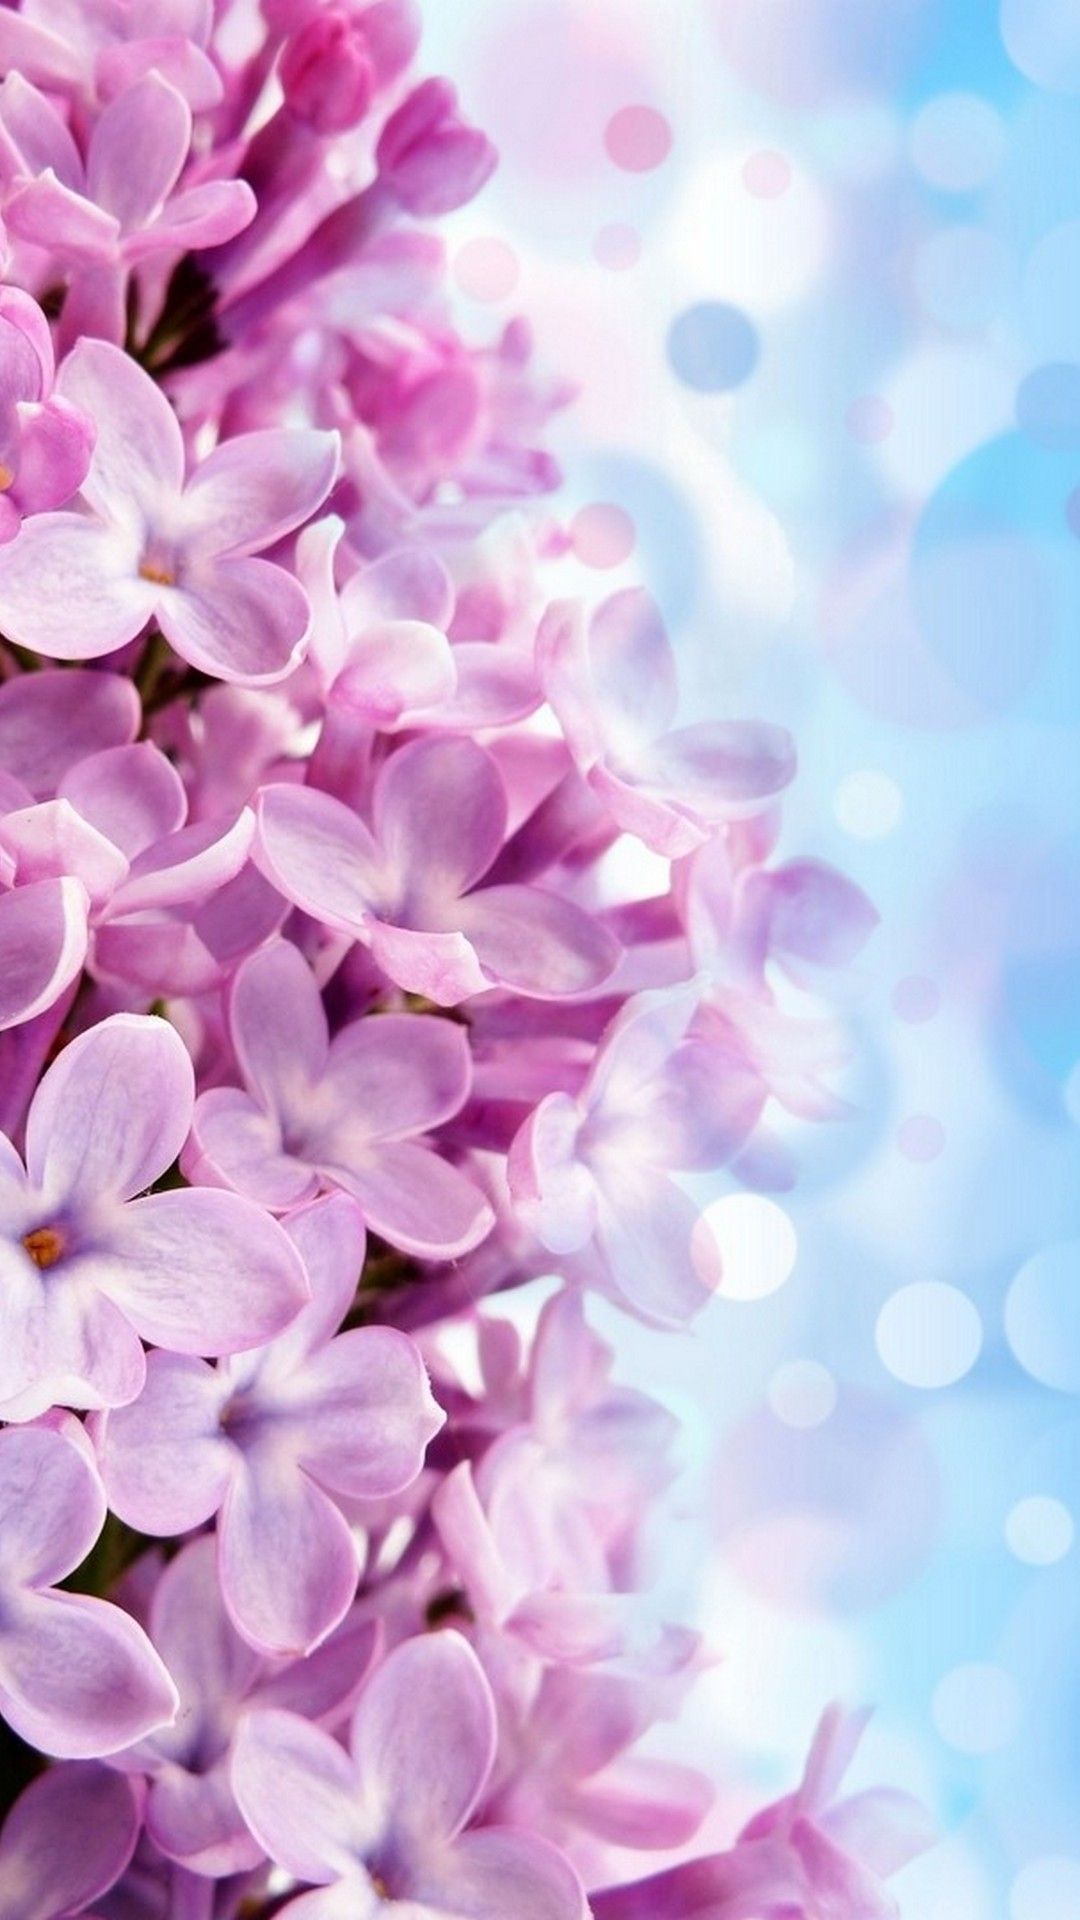 1080x1920 Iphone Wallpaper Hd Purple Flowers 2022 Cute Wallpaper